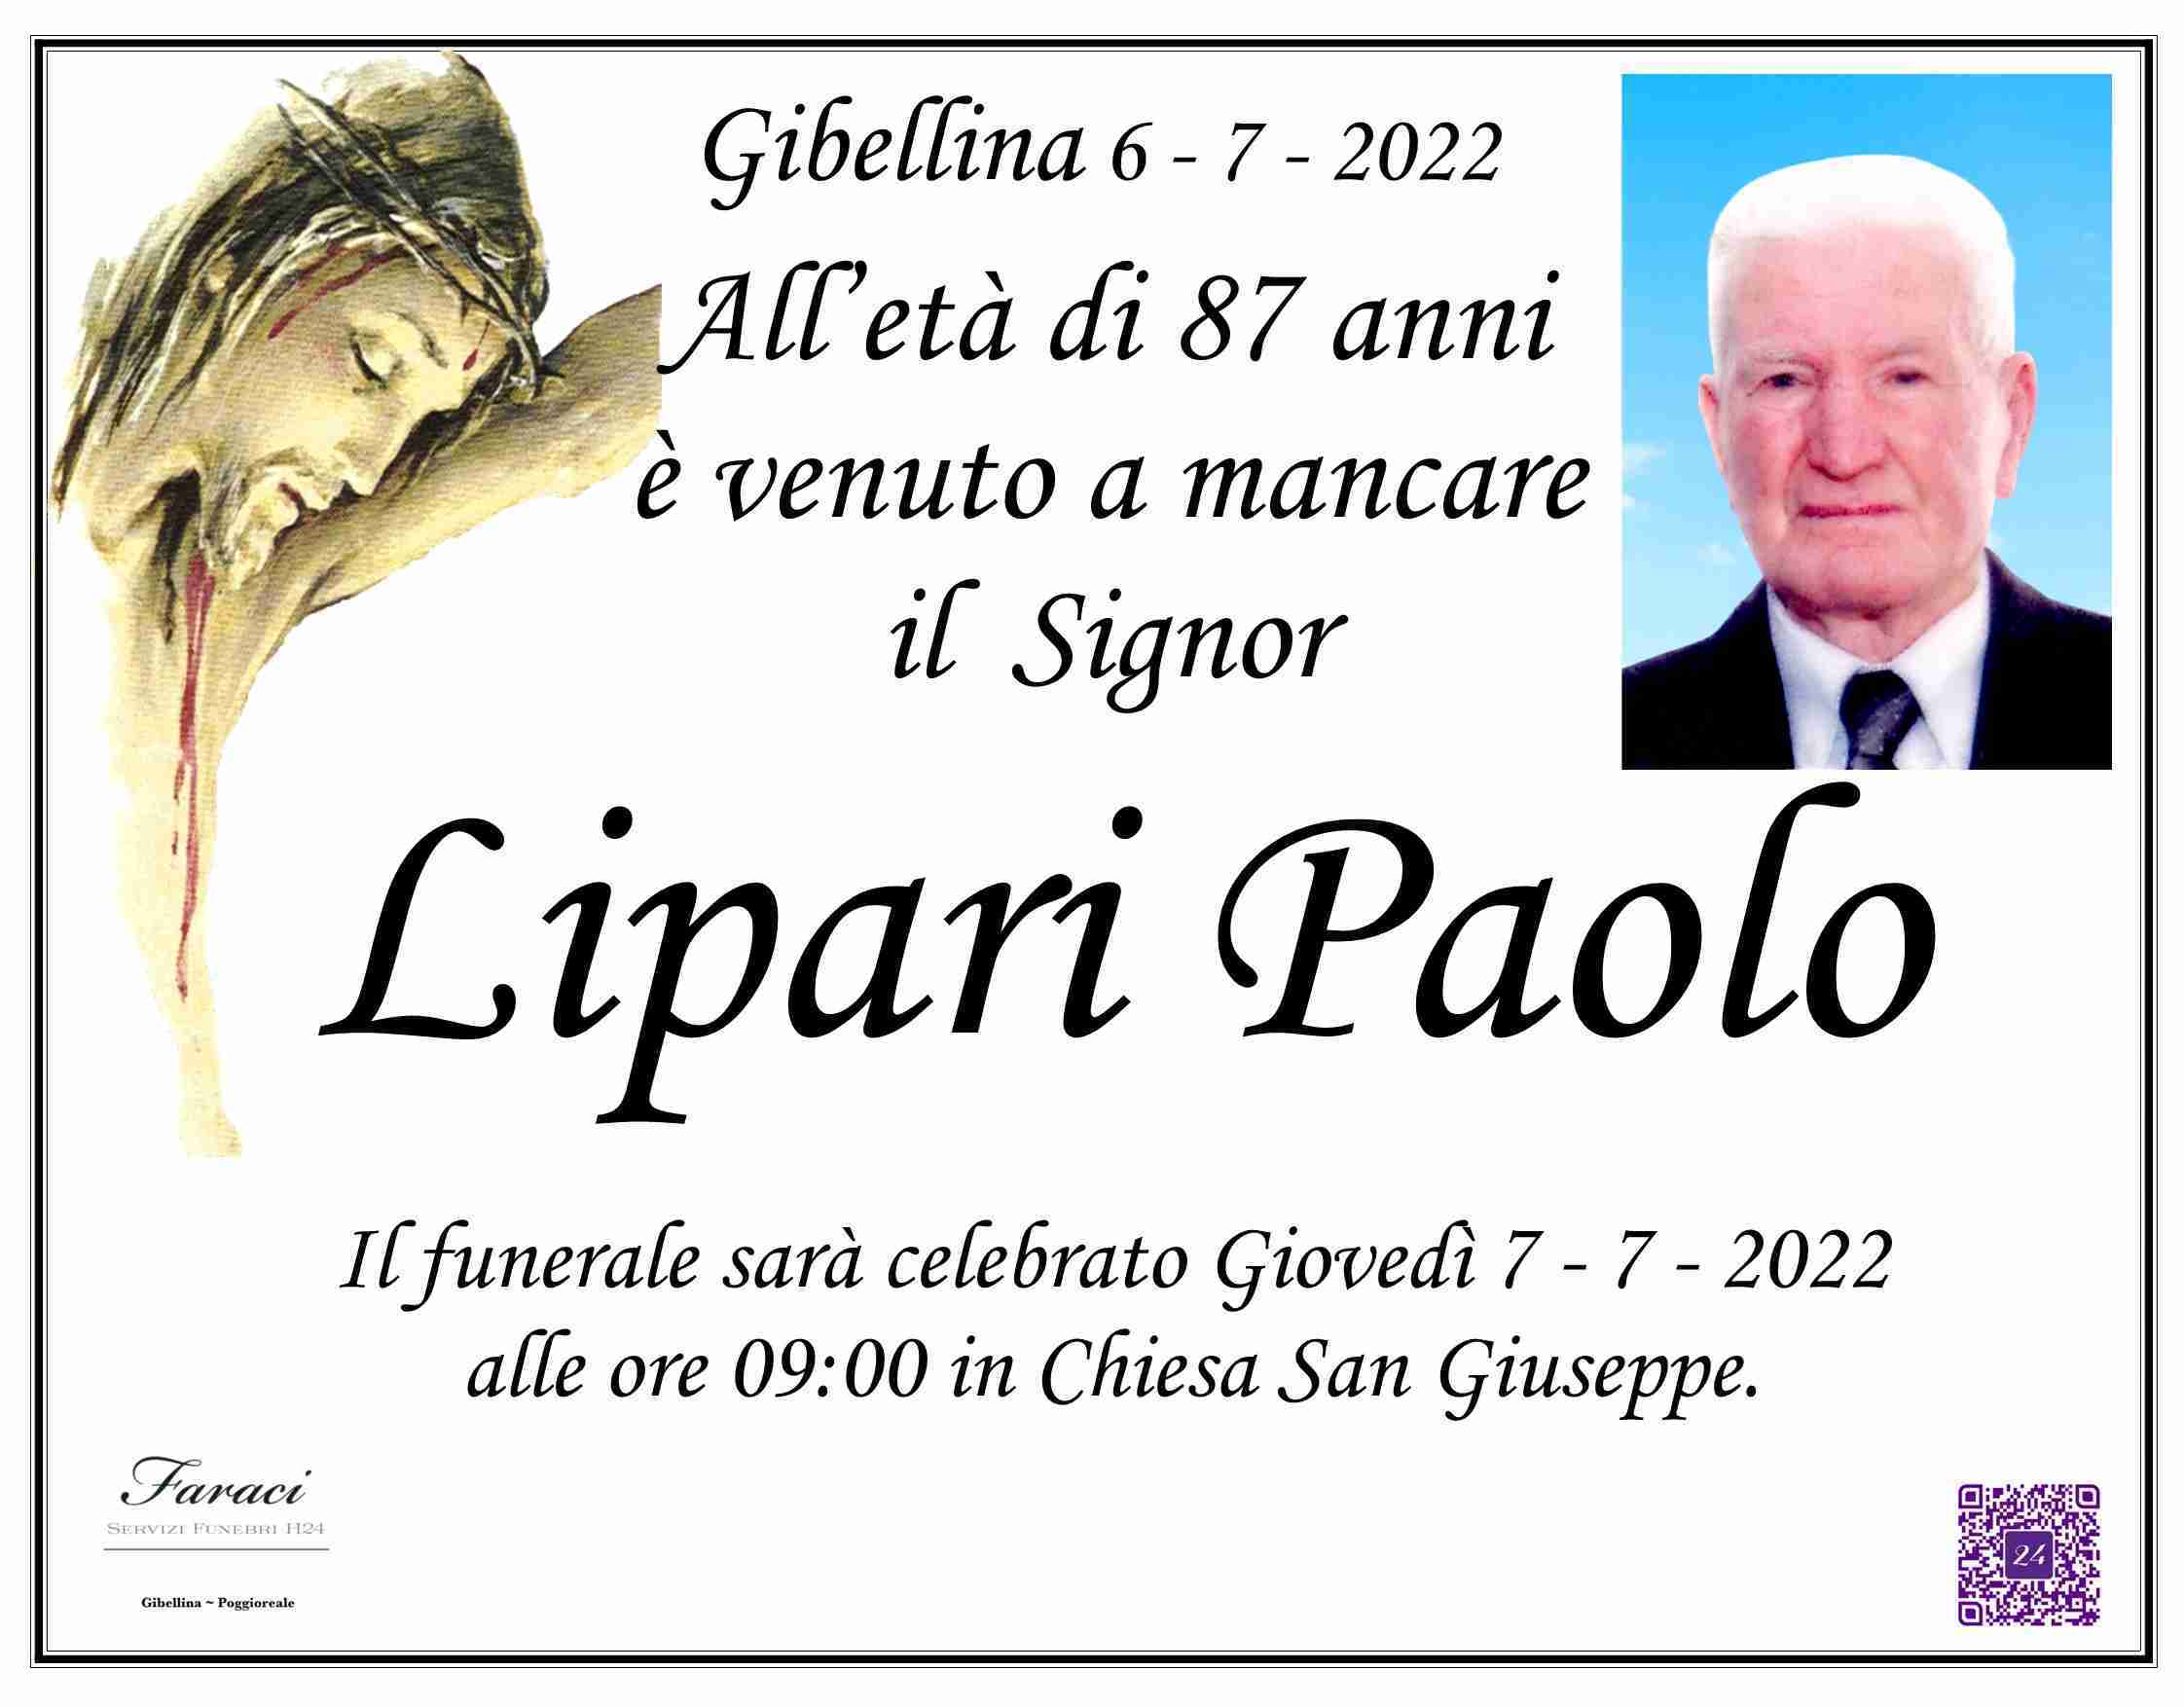 Paolo Lipari